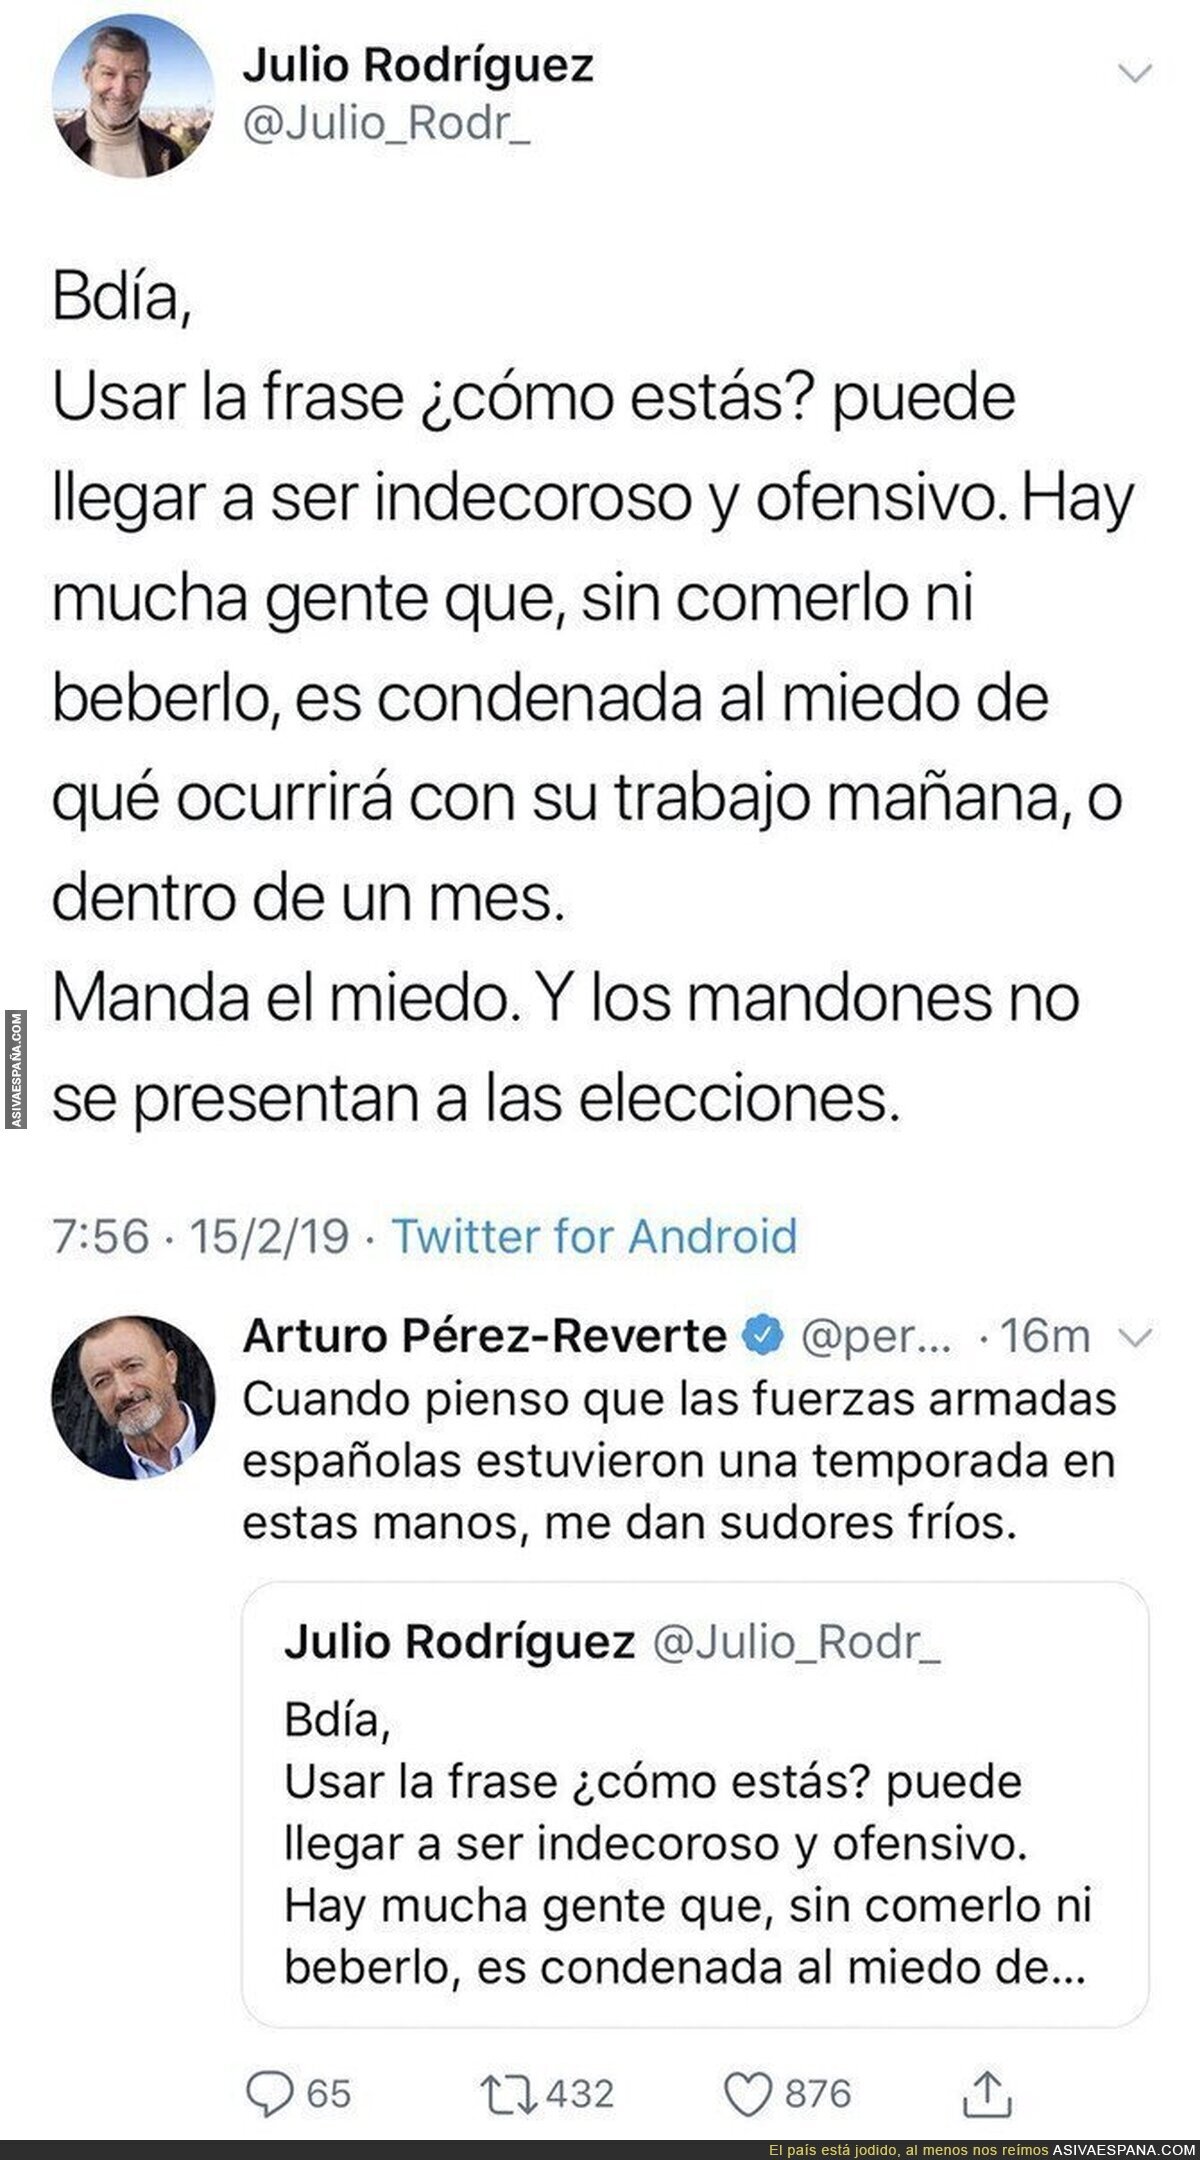 El comentario de Arturo Pérez-Reverte ante este tuit del Jemad Julio Rodríguez